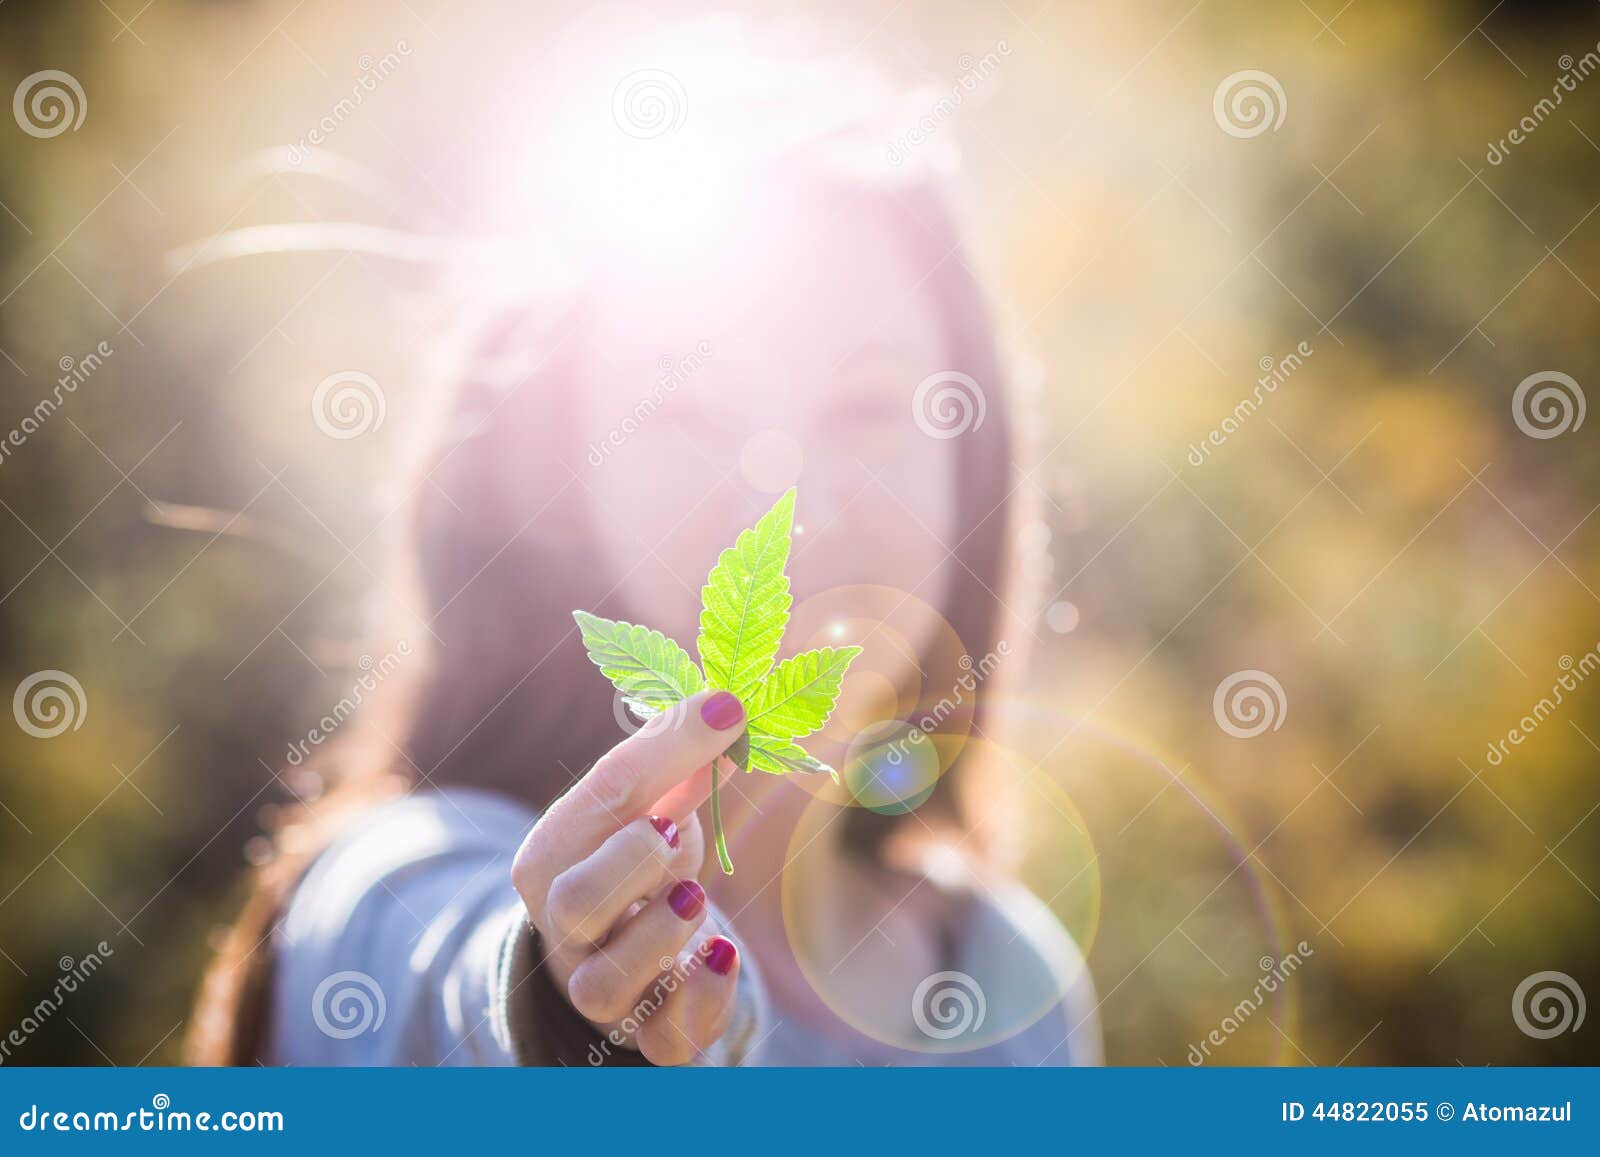 Скачать картинку девушка с марихуаной смотреть любовь и другие наркотики